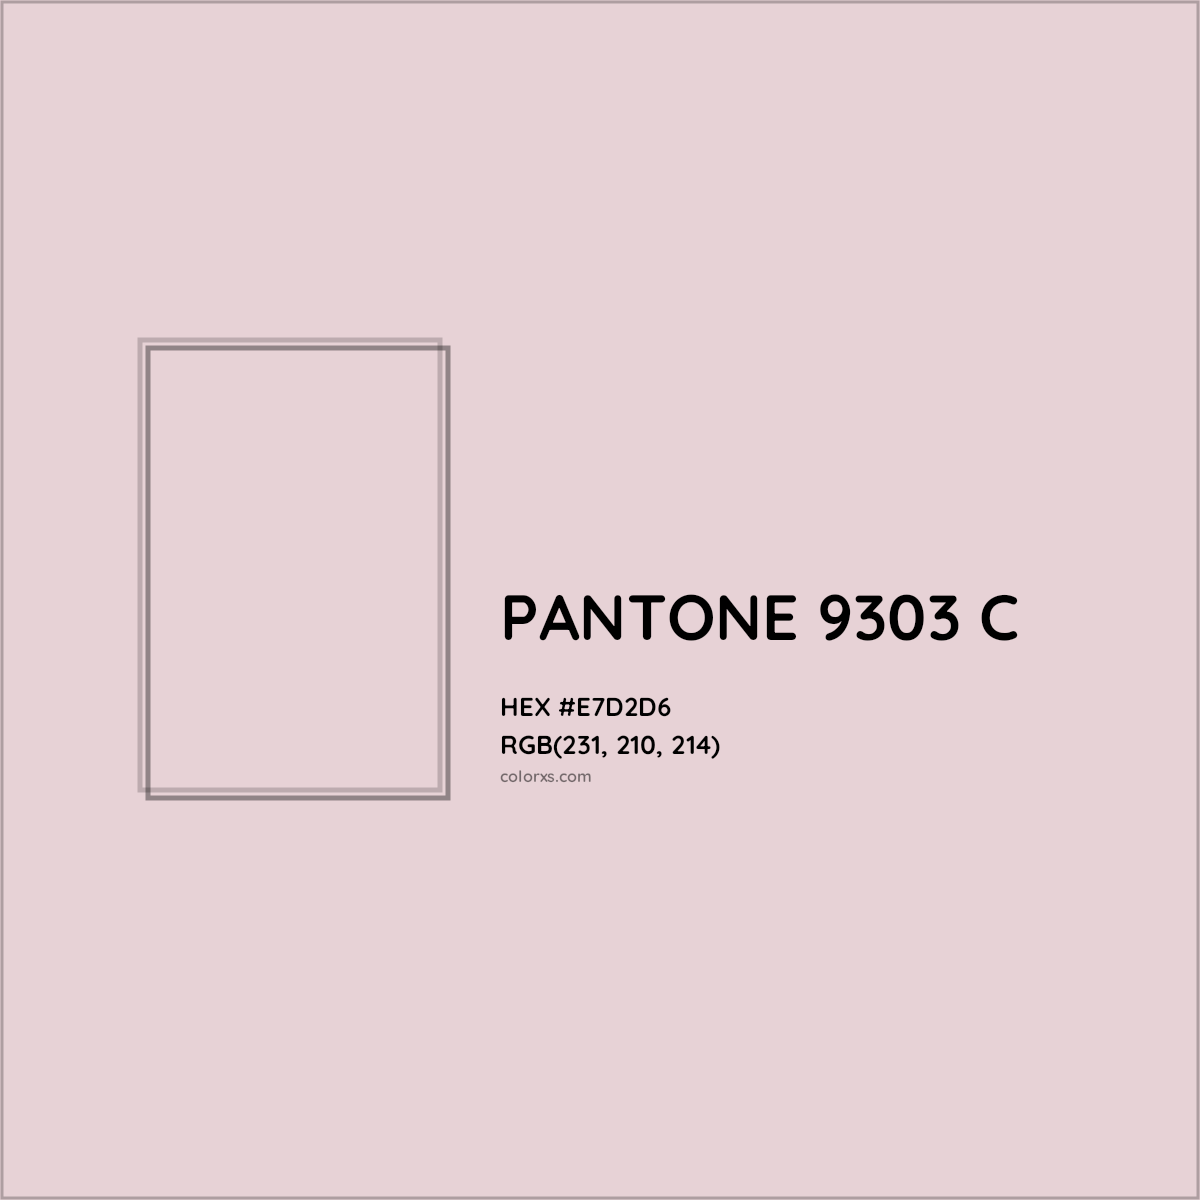 HEX #E7D2D6 PANTONE 9303 C CMS Pantone PMS - Color Code